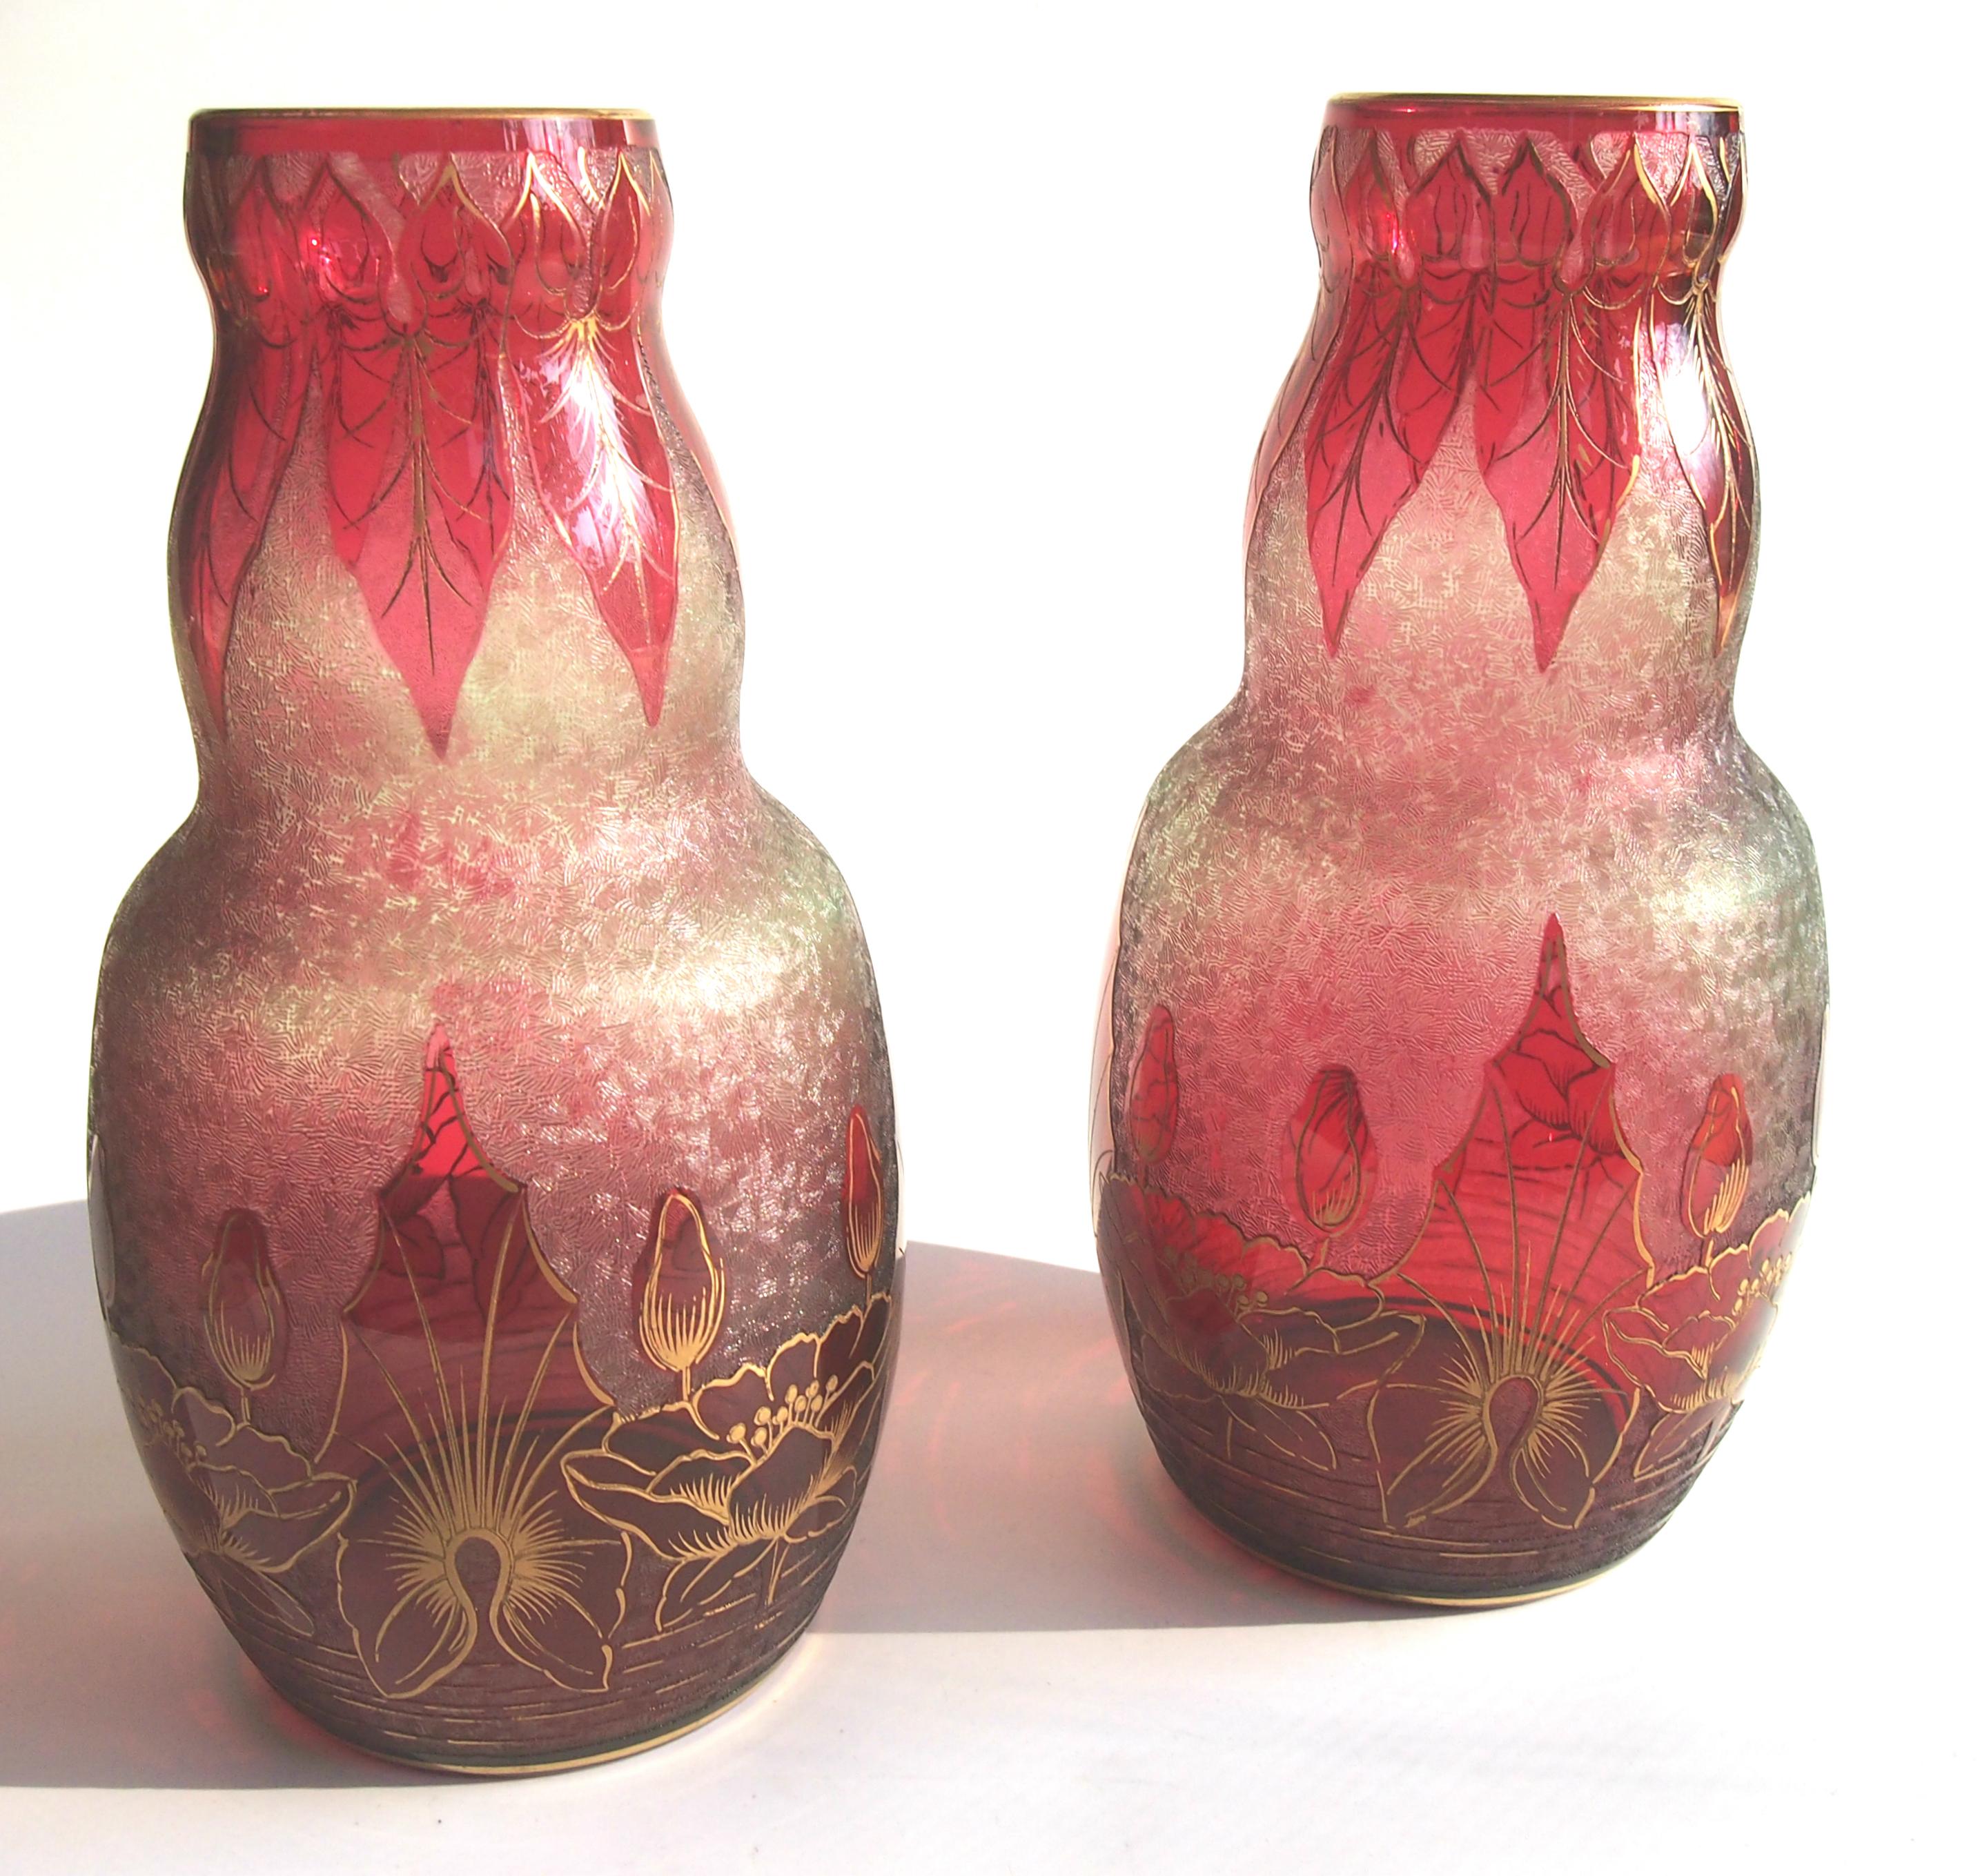 Wichtiges Paar Art Nouveau Baccarat Kristall vergoldet Kamee Vasen in tiefem Rot über blassem Grün, die eine stilvolle aquatische Szene mit Seerosen. Wie bei den meisten frühen Baccarat Kamee gibt es eine feine Muster detailliert in der unteren